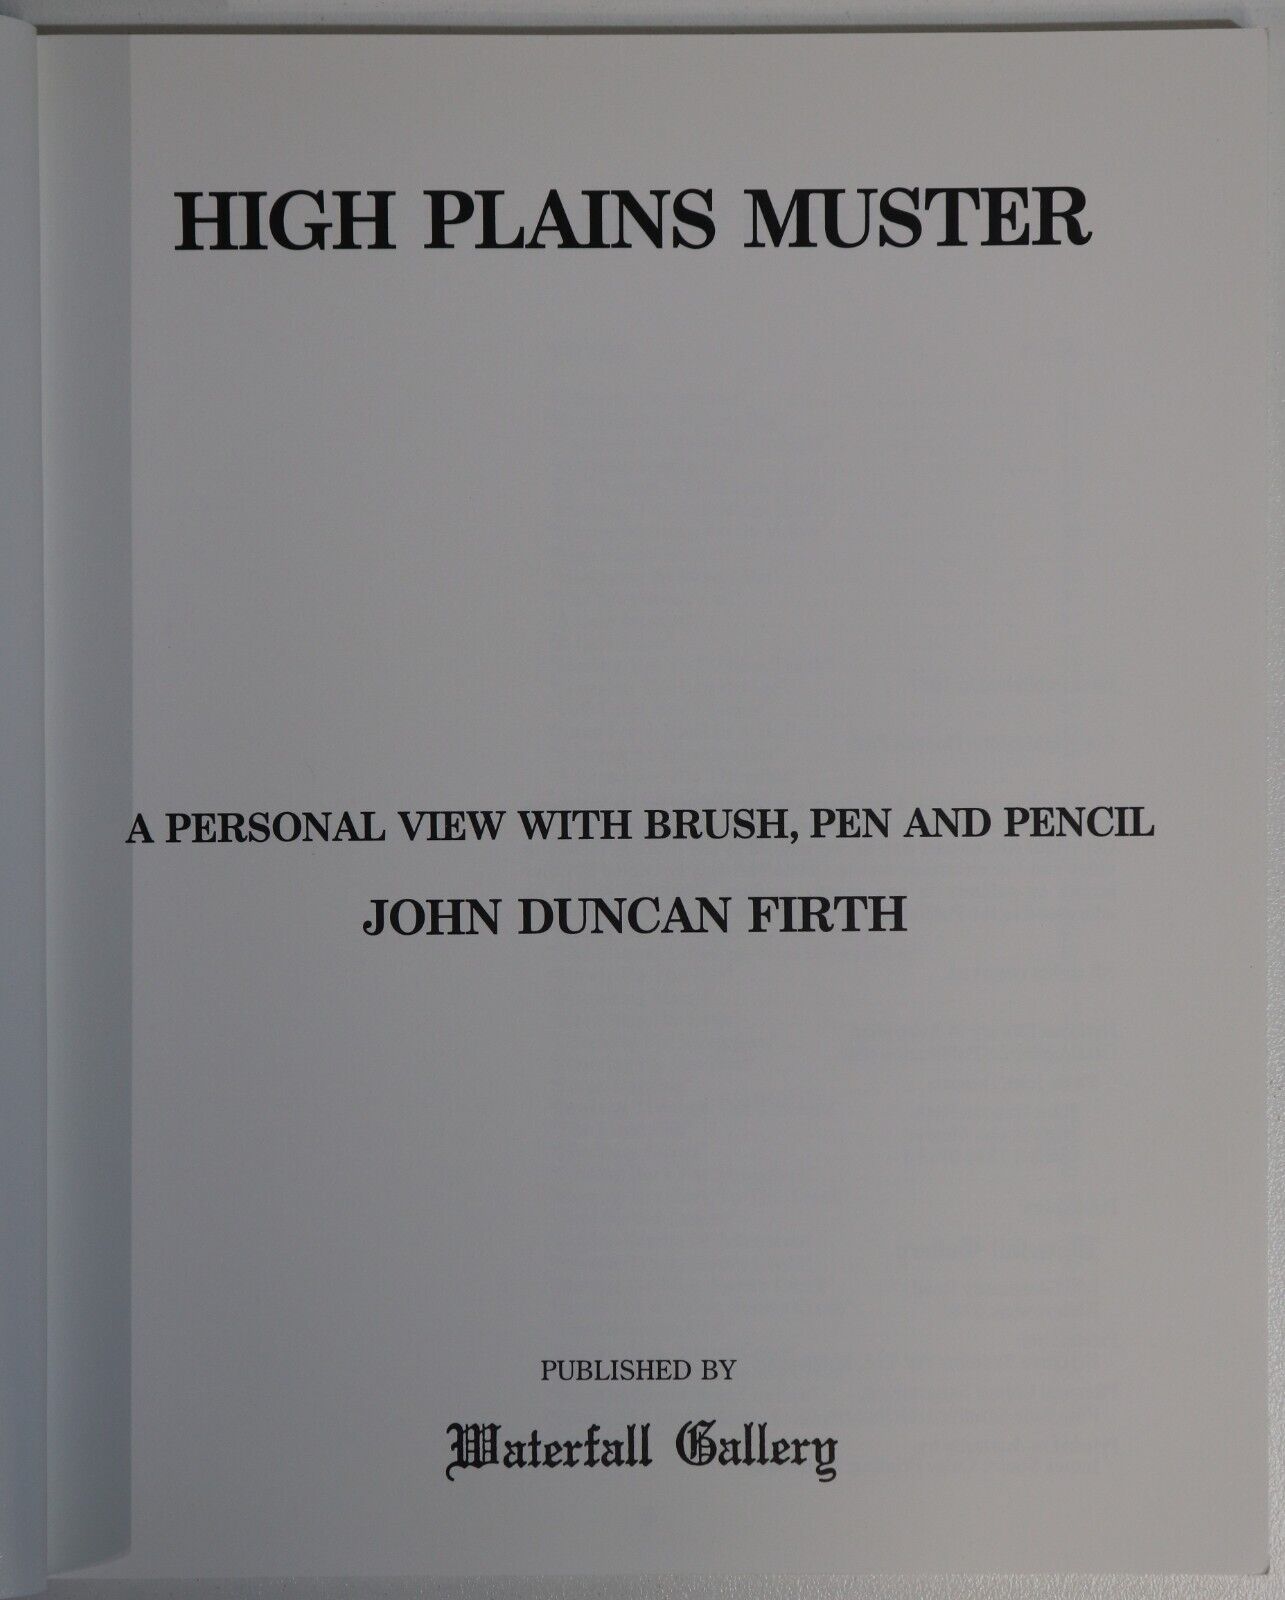 High Plains Muster by John Duncan Firth - 1987 - Australian Art Book